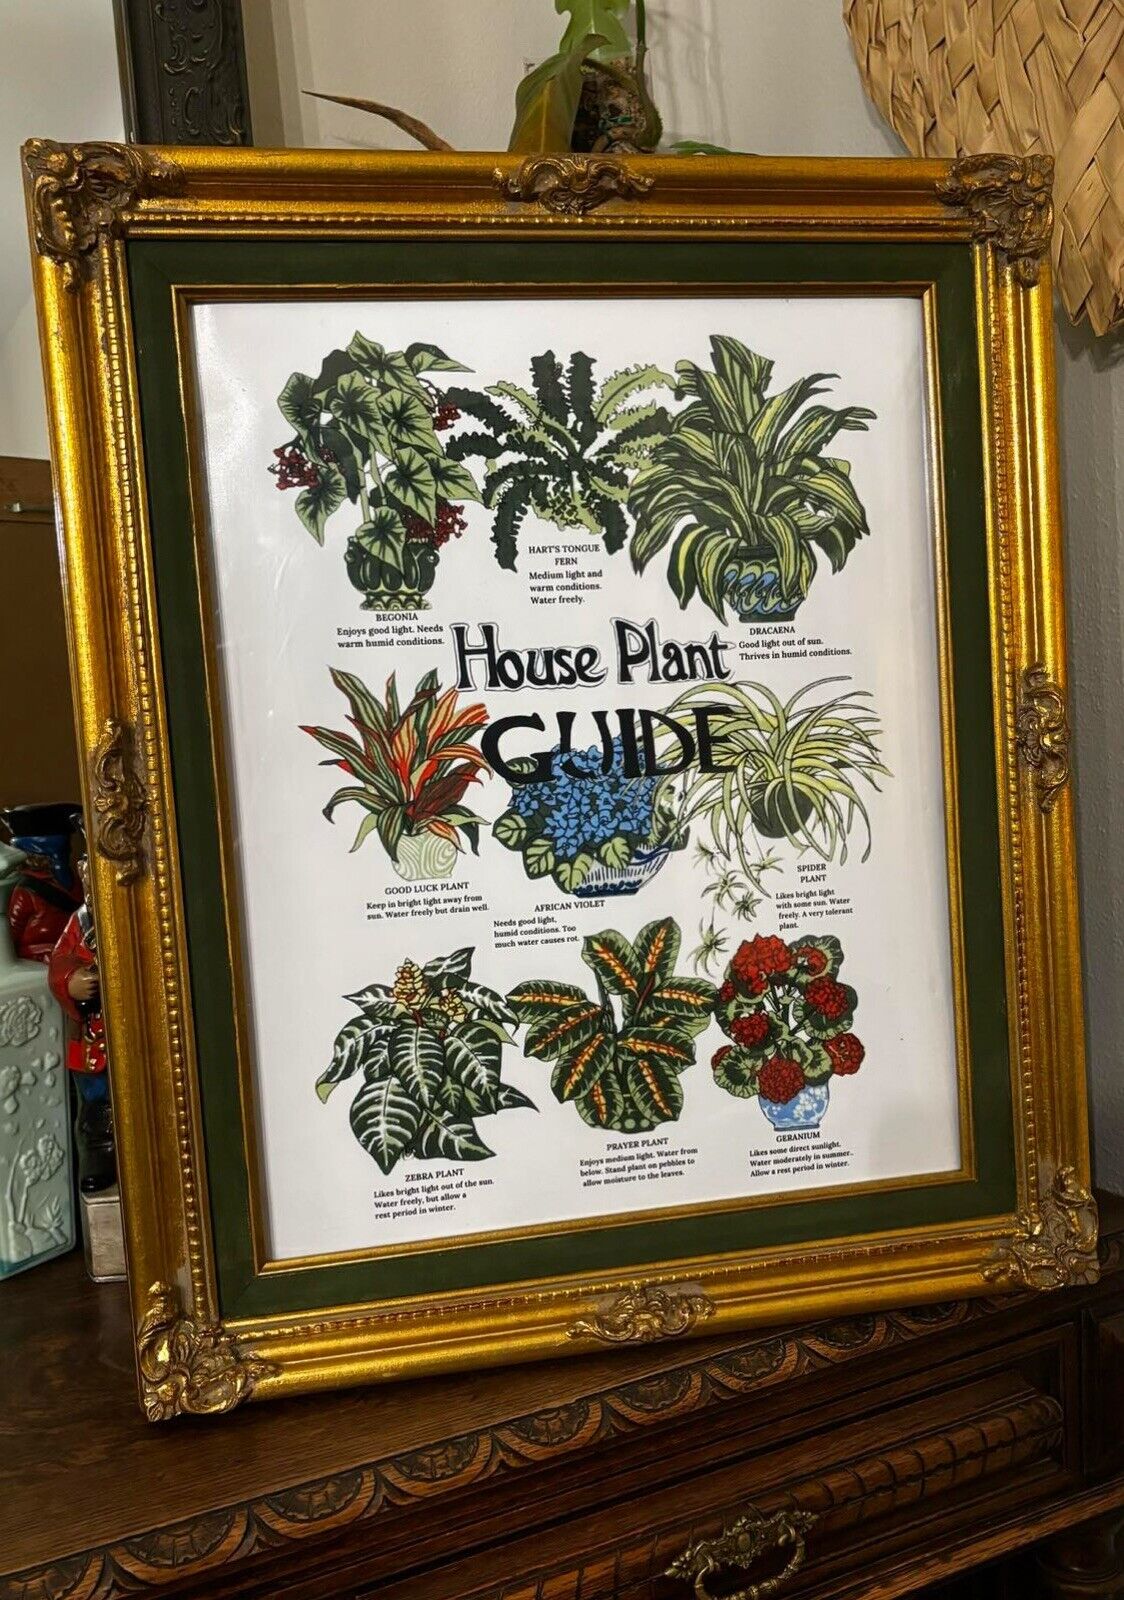 Vintage Ornate Wooden Framed House Plant Guide Tea Towel Artwork 16x20